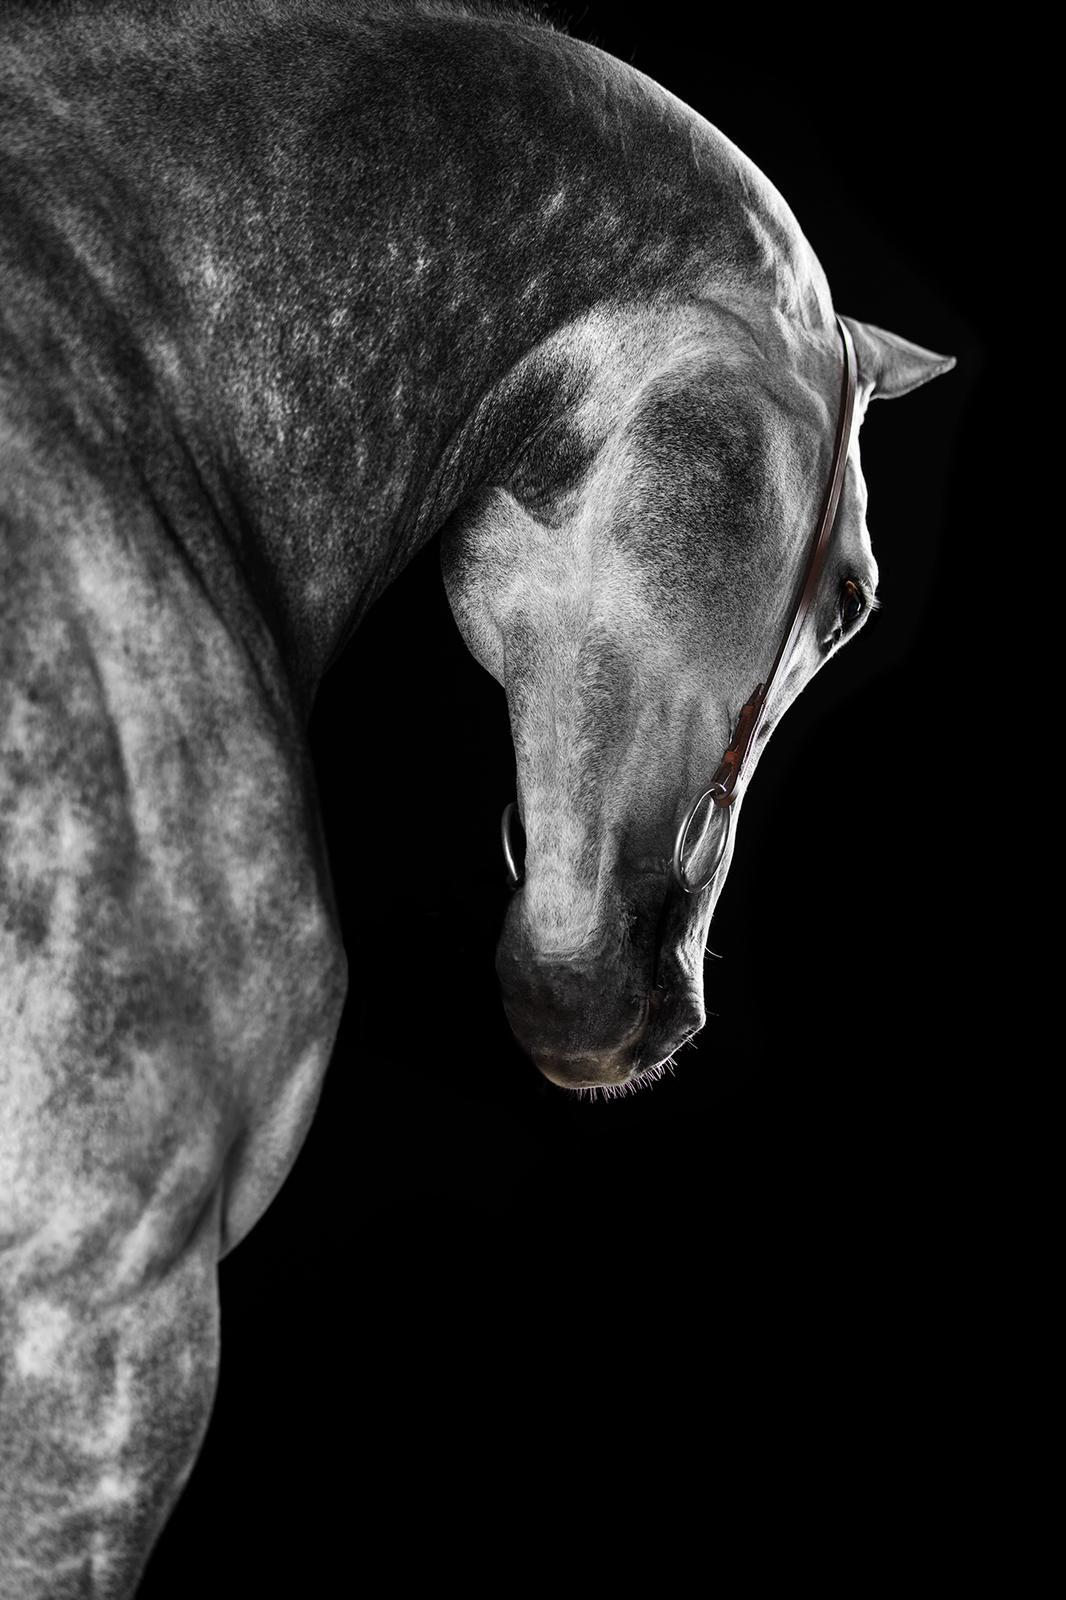 Raphael Macek Portrait Photograph - Castellum (Horse Portrait, Equine Beauty)